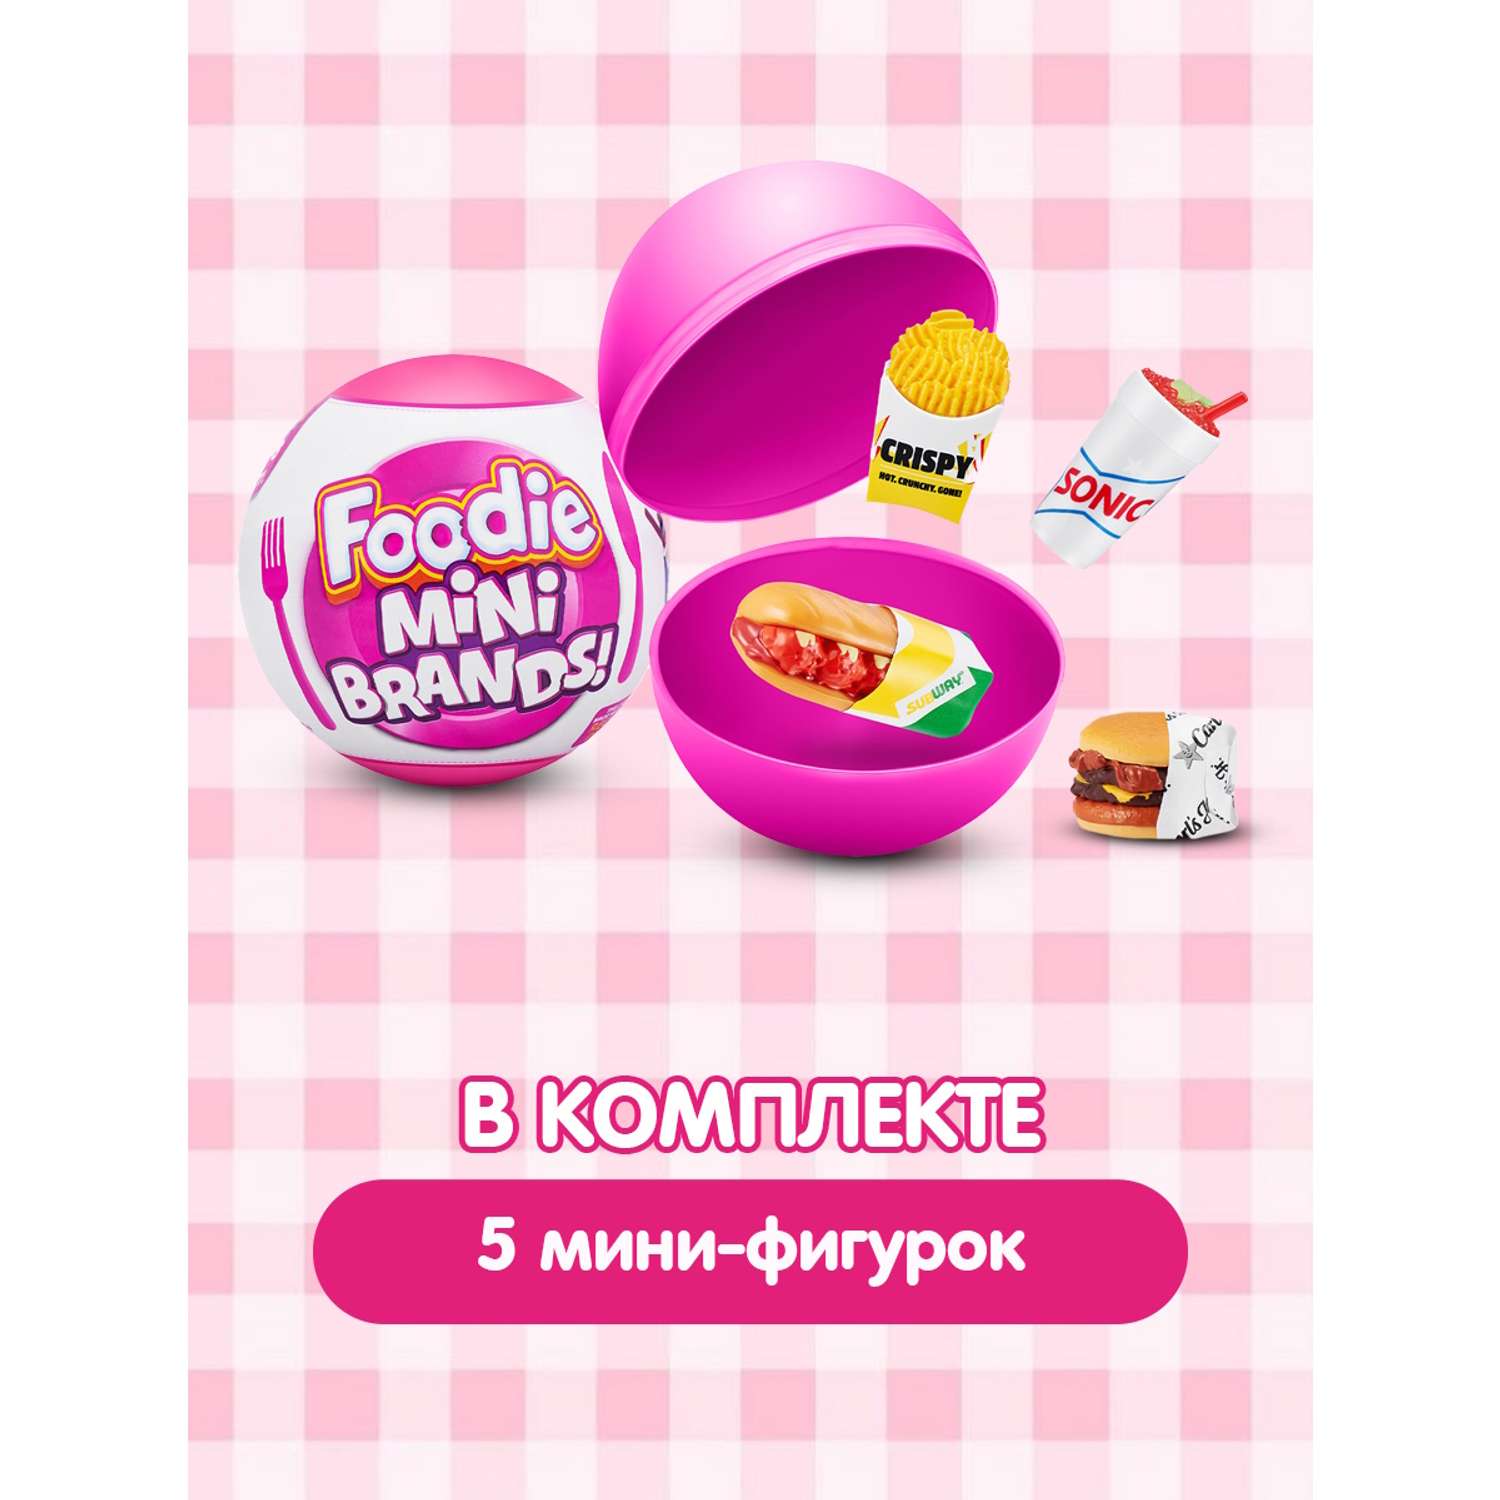 Игрушка Zuru 5 surprise Mini brands Foodie в непрозрачной упаковке (Сюрприз) 77262GQ1 - фото 4